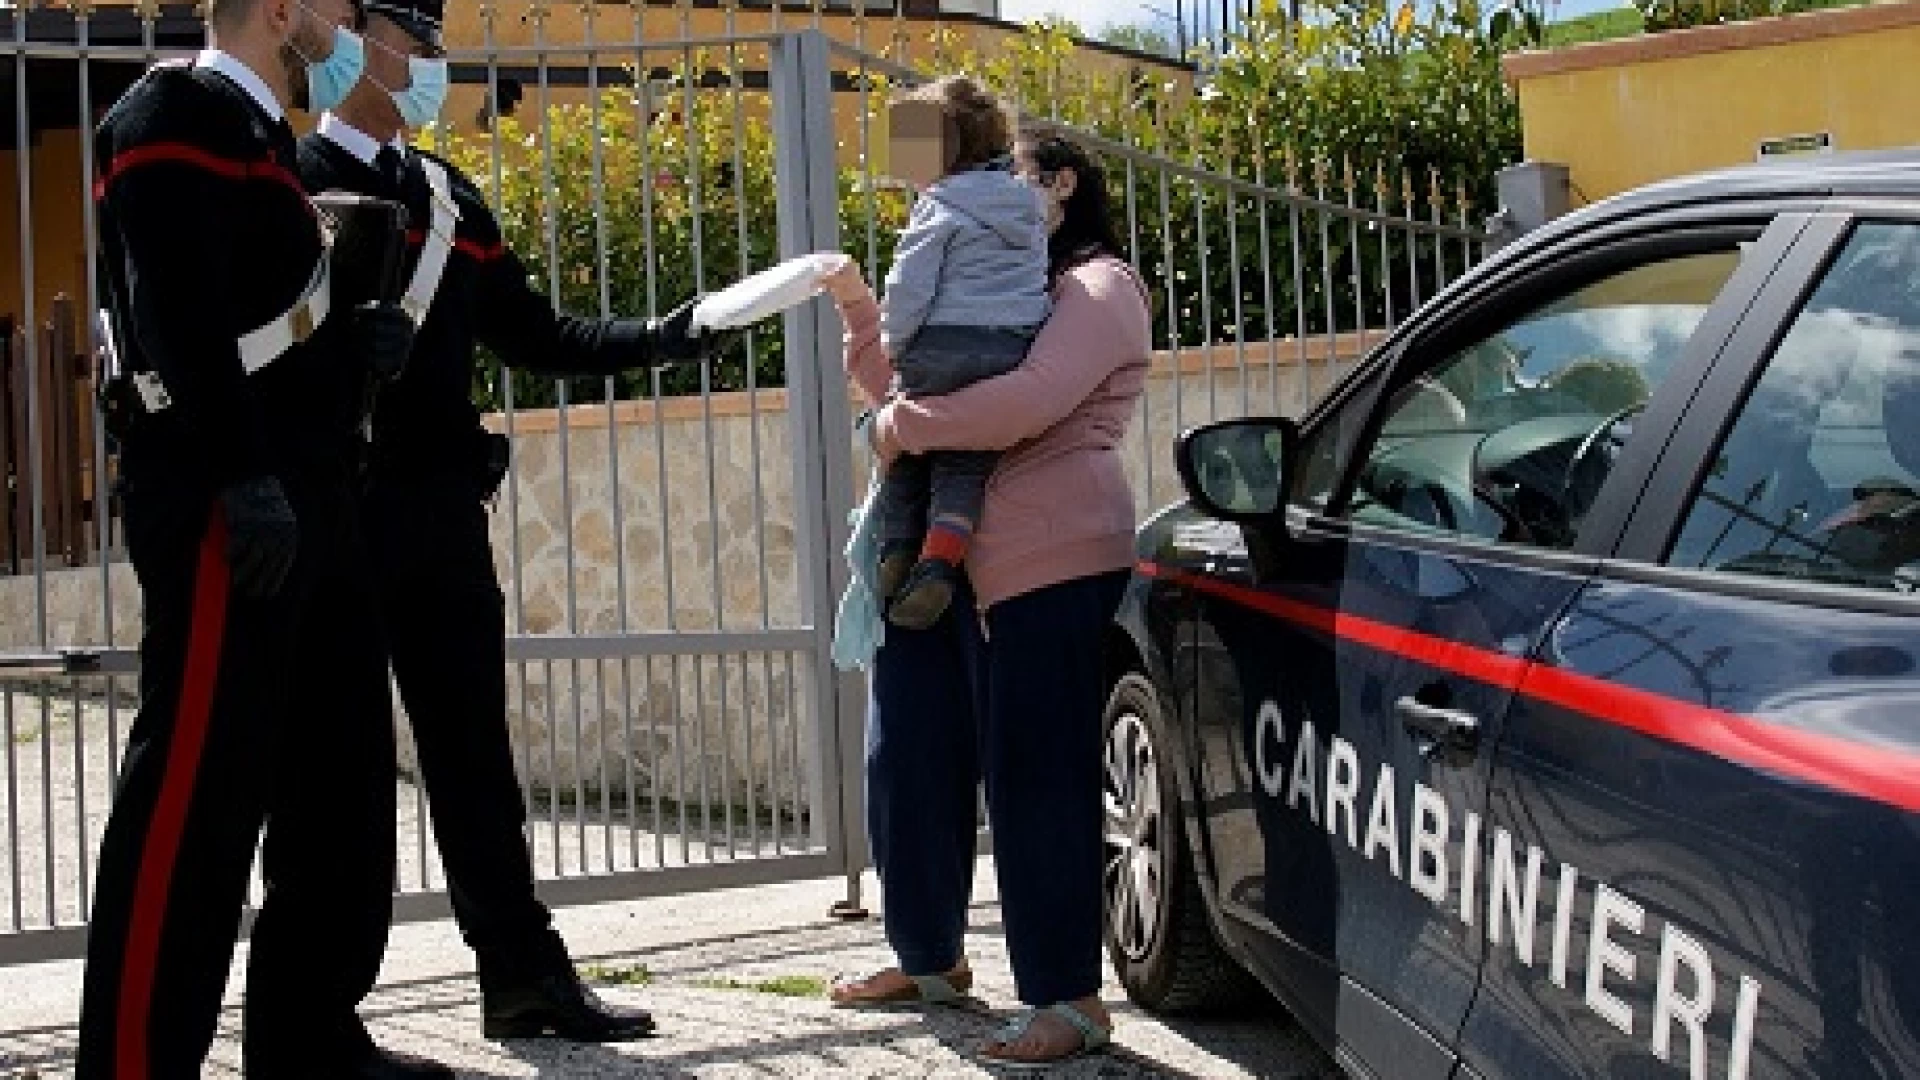 Rionero Sannitico: i Carabinieri soccorrono famiglia straniera in difficolta’. Lasciati in panne dal loro mezzo presso località “Le Vigne”.